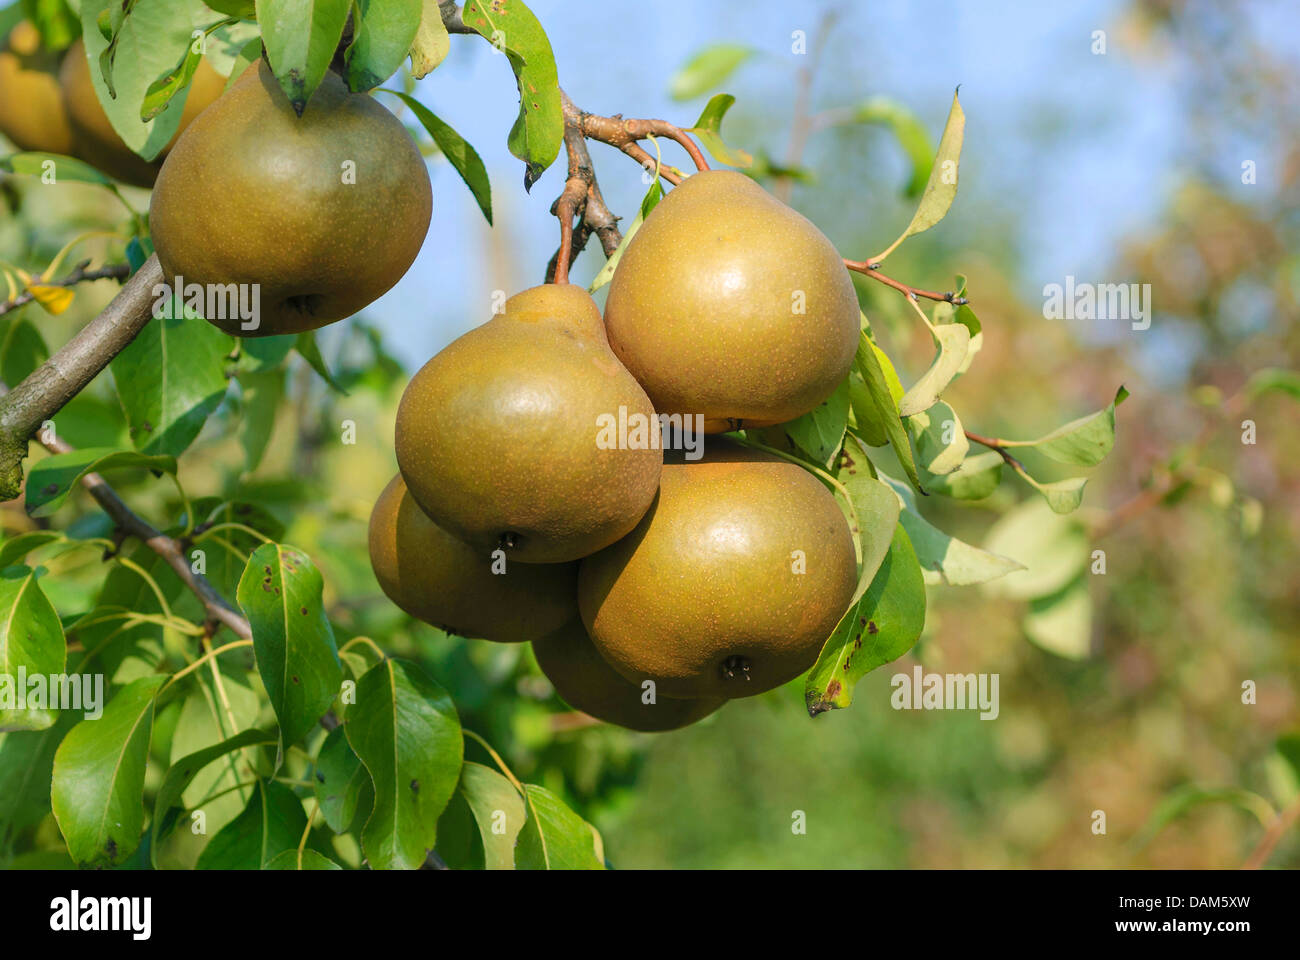 Common pear (Pyrus communis 'Uta', Pyrus communis Uta), cultivar Uta Stock Photo